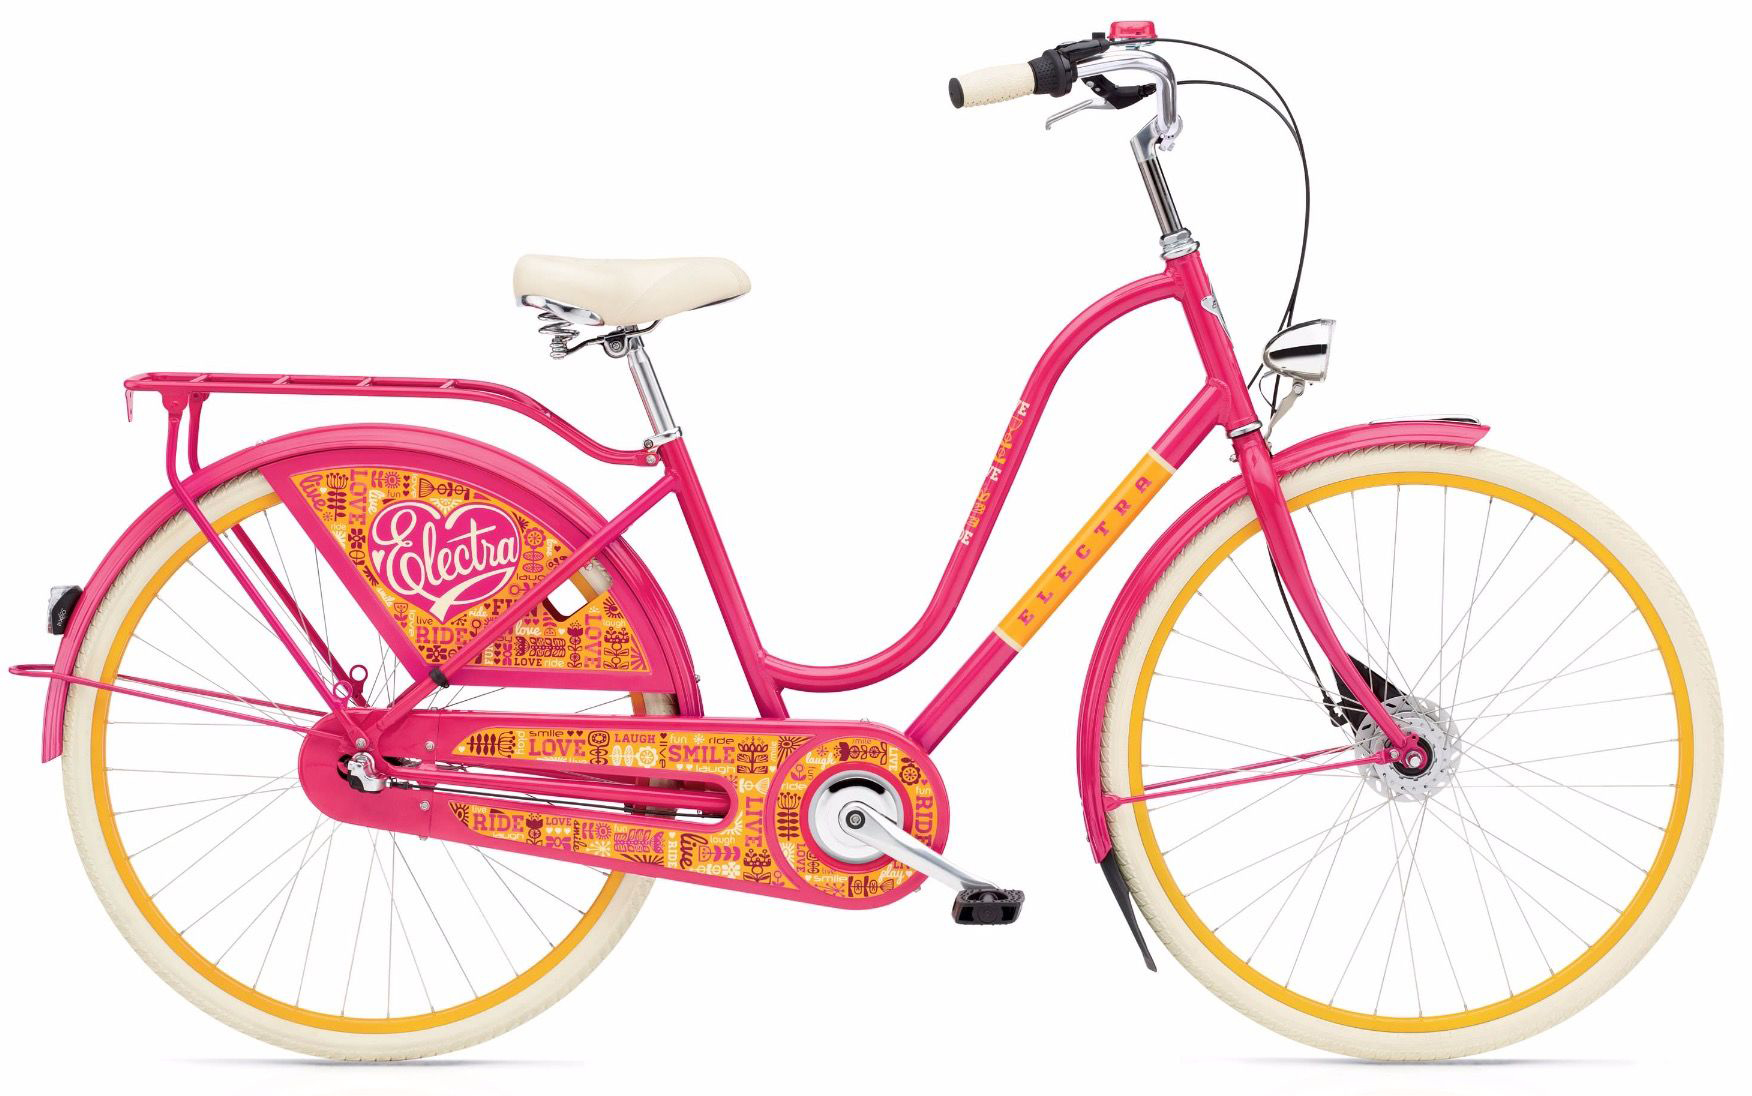  Отзывы о Женском велосипеде Electra Amsterdam Fashion 3i Joyride 2019